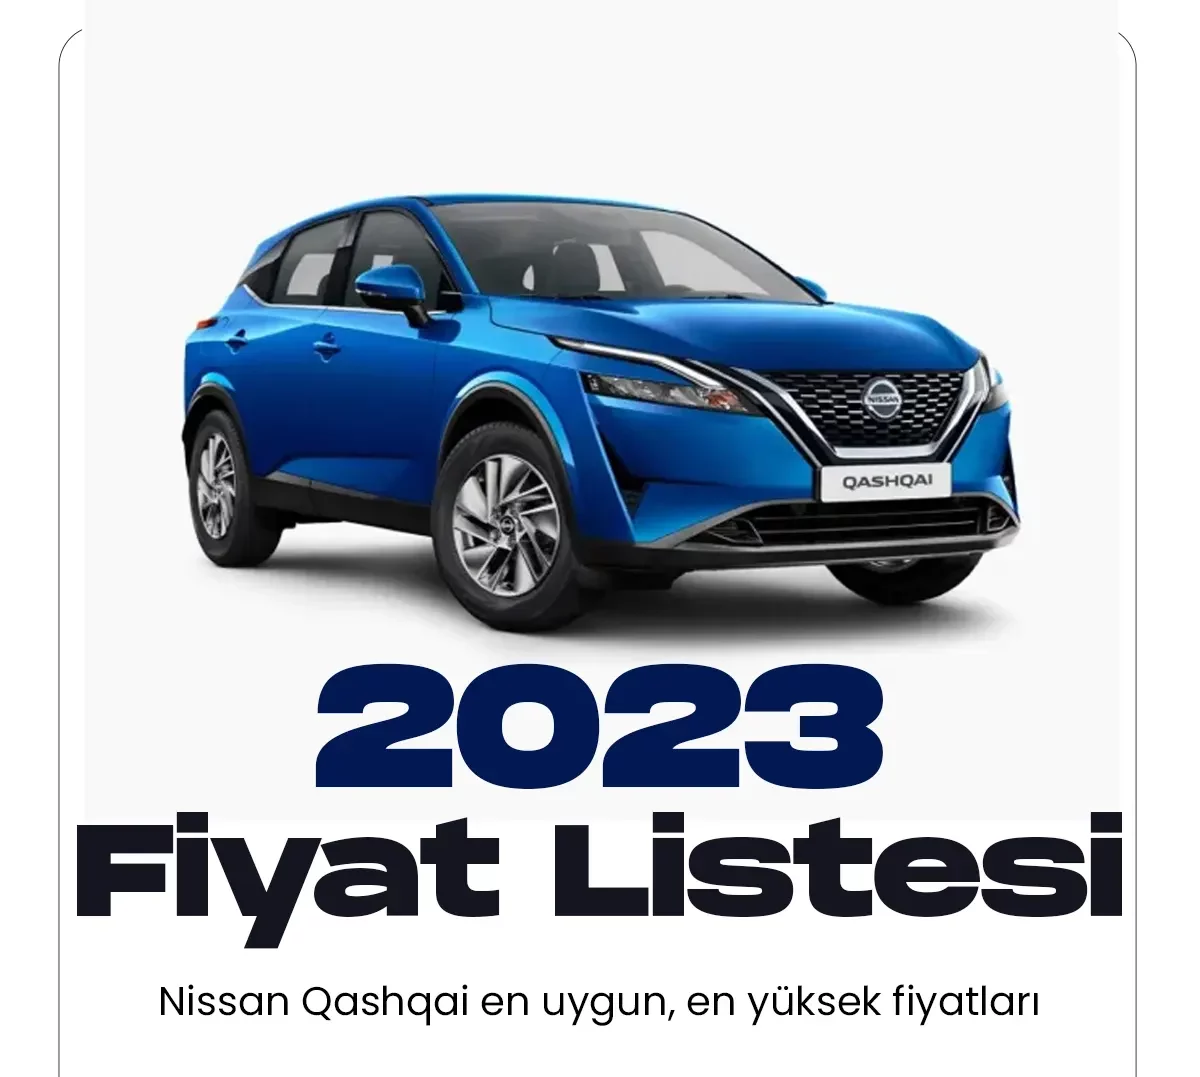 Nissan Qashqai Ocak fiyat listesi yayımlandı.